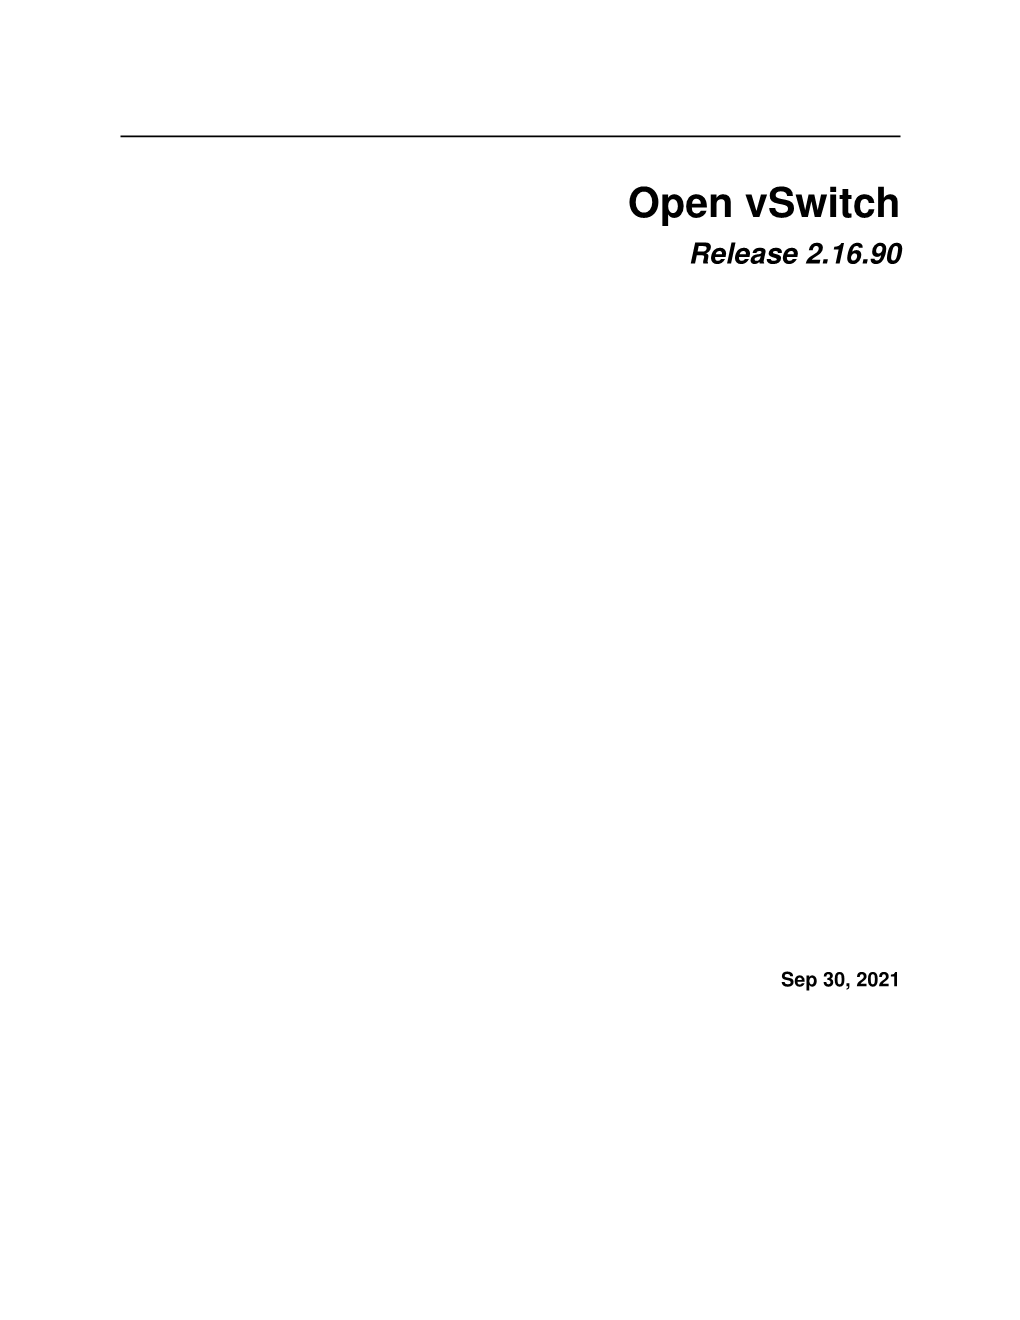 Open Vswitch Release 2.16.90